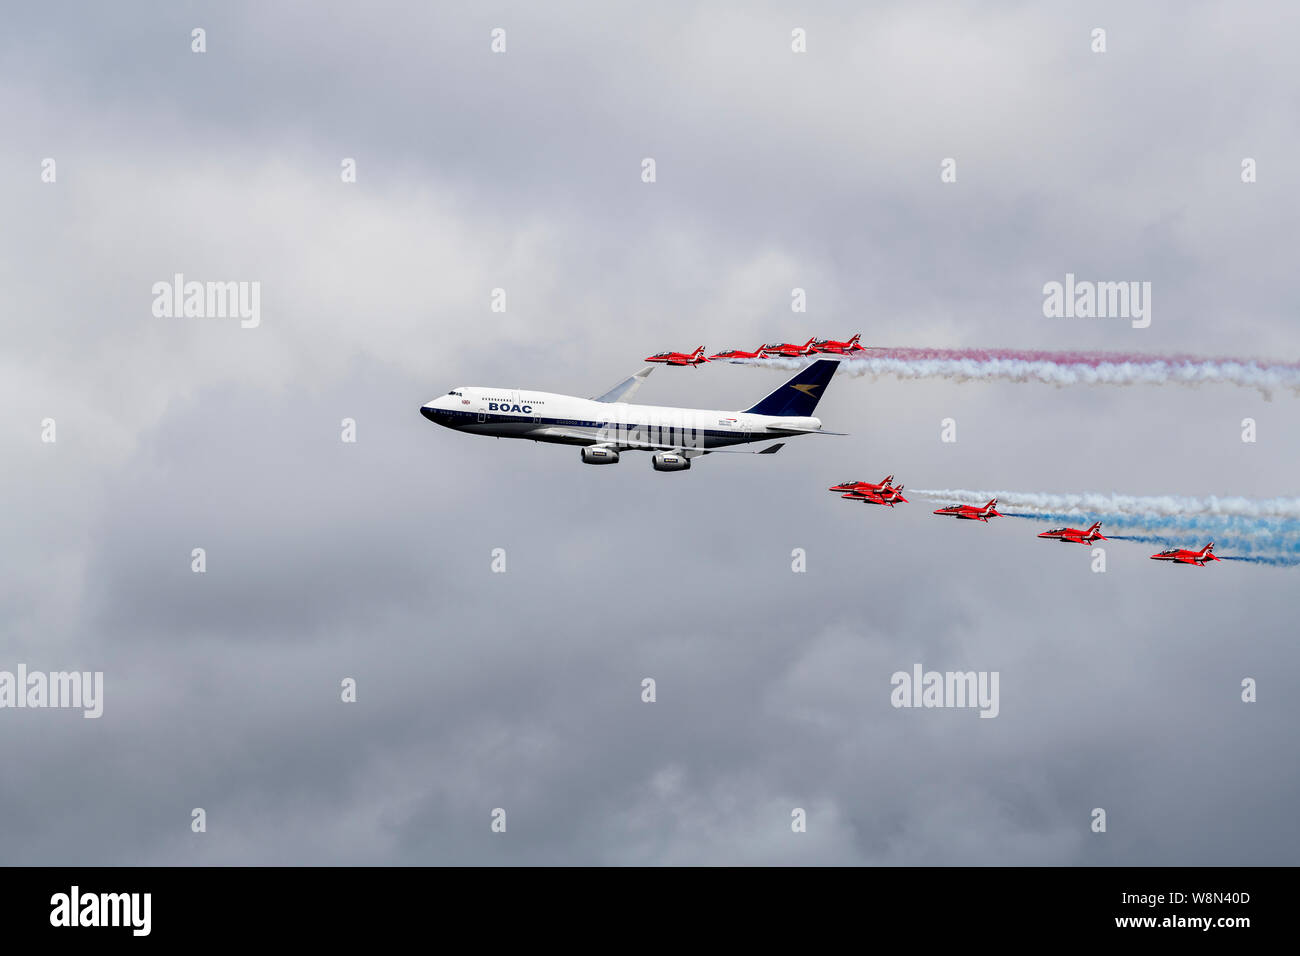 British Airways et les flèches rouges célébrer le centenaire de British Airways. Banque D'Images